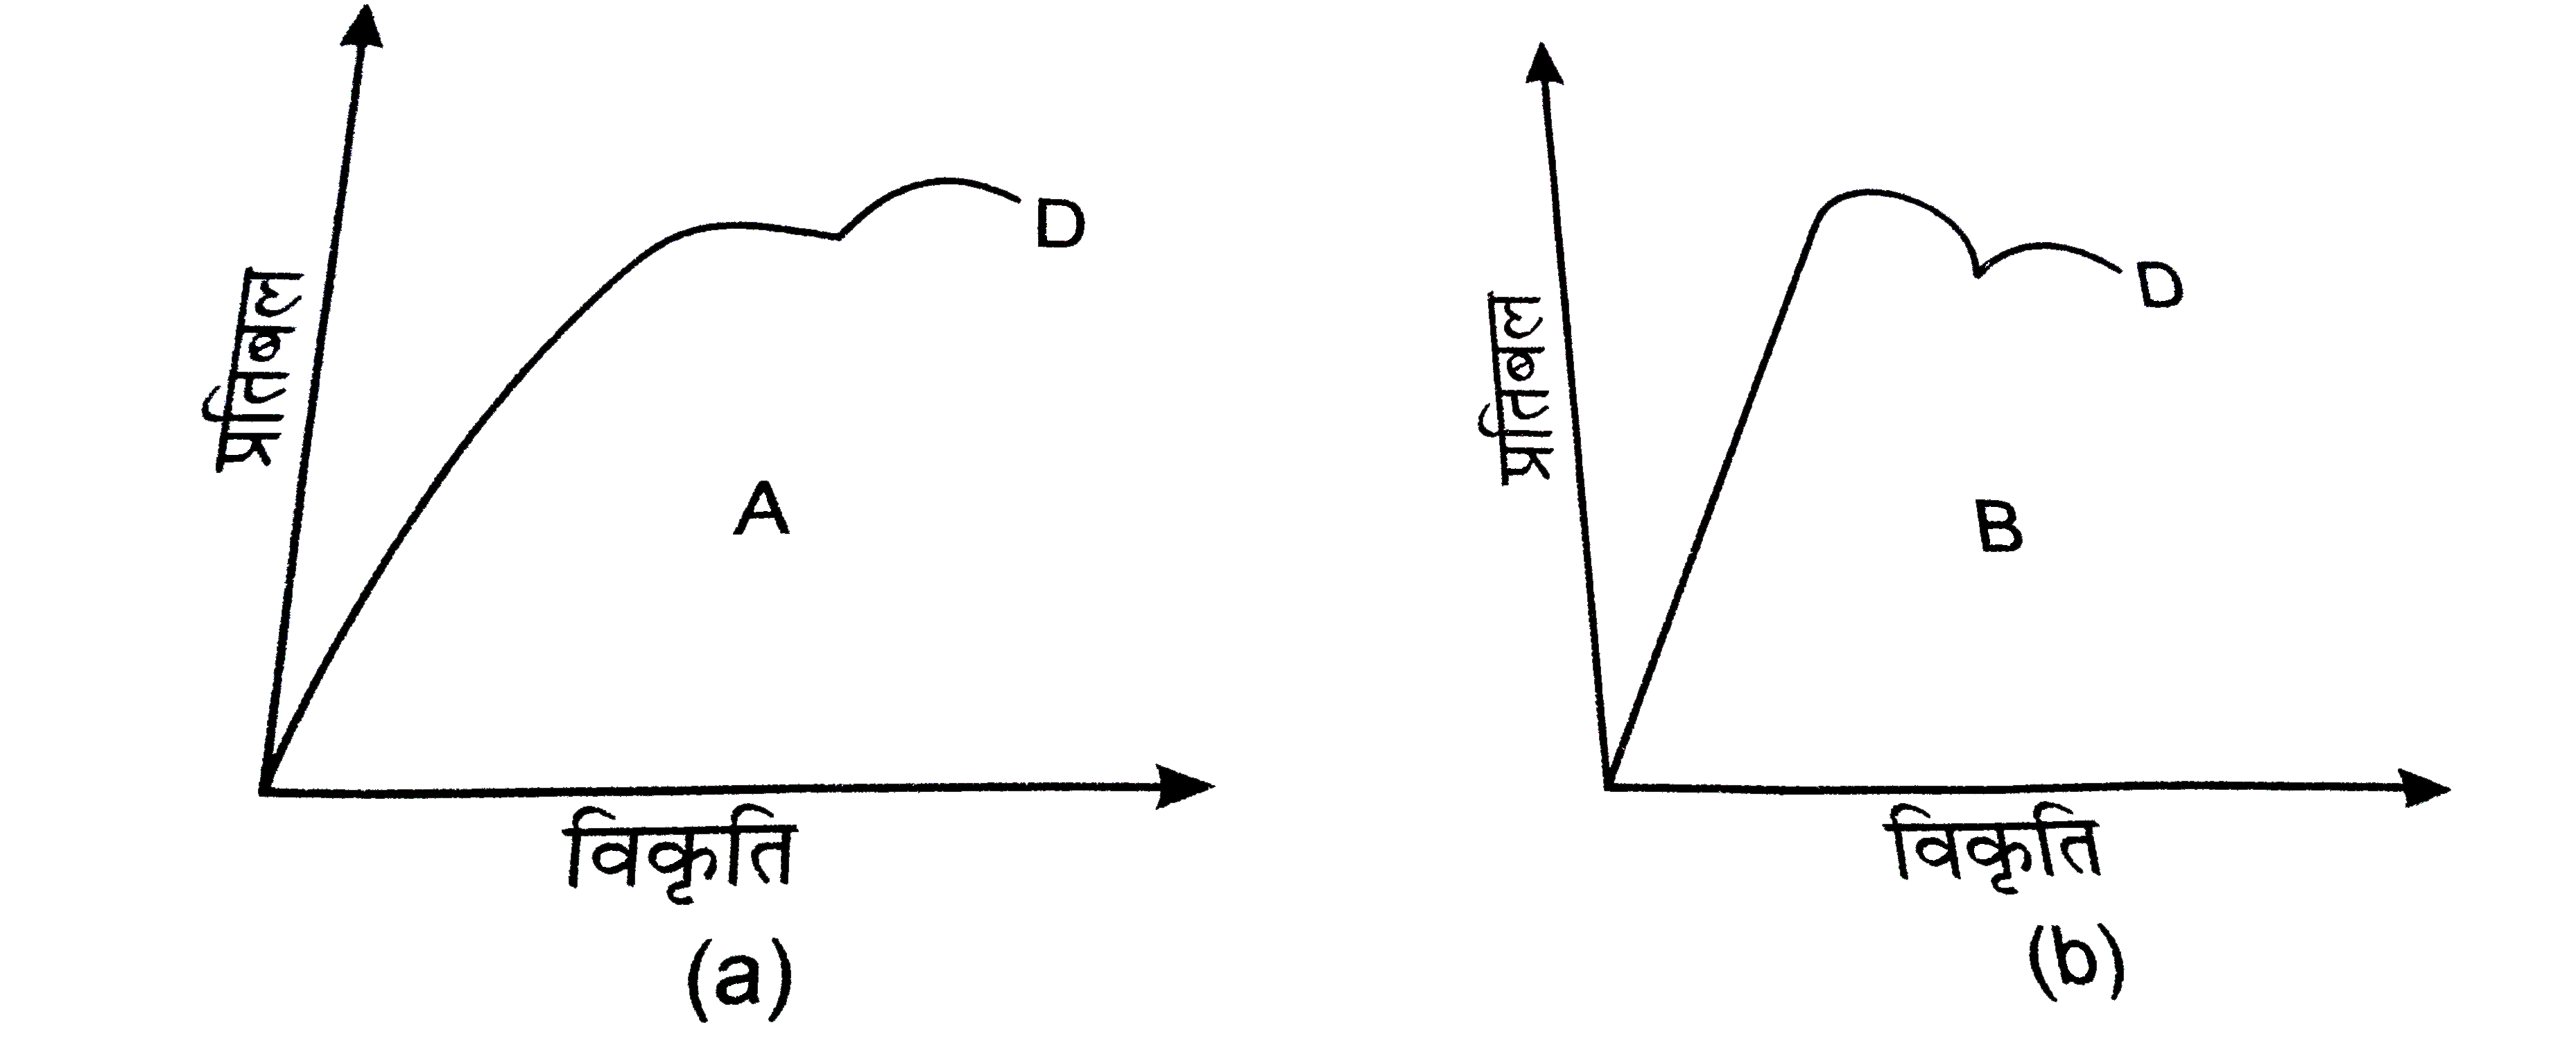 दो पदार्थो  तथा  के लये प्रतिबल - विकृति  ग्राफ चित्र में दर्शाये गये है ।         इन ग्राफो को एक ही पैमाना मानकर खिंचा गया है ।   (ii) दोनों पदार्थ का यंग प्रत्यास्थता गुणांक अधिक है ?